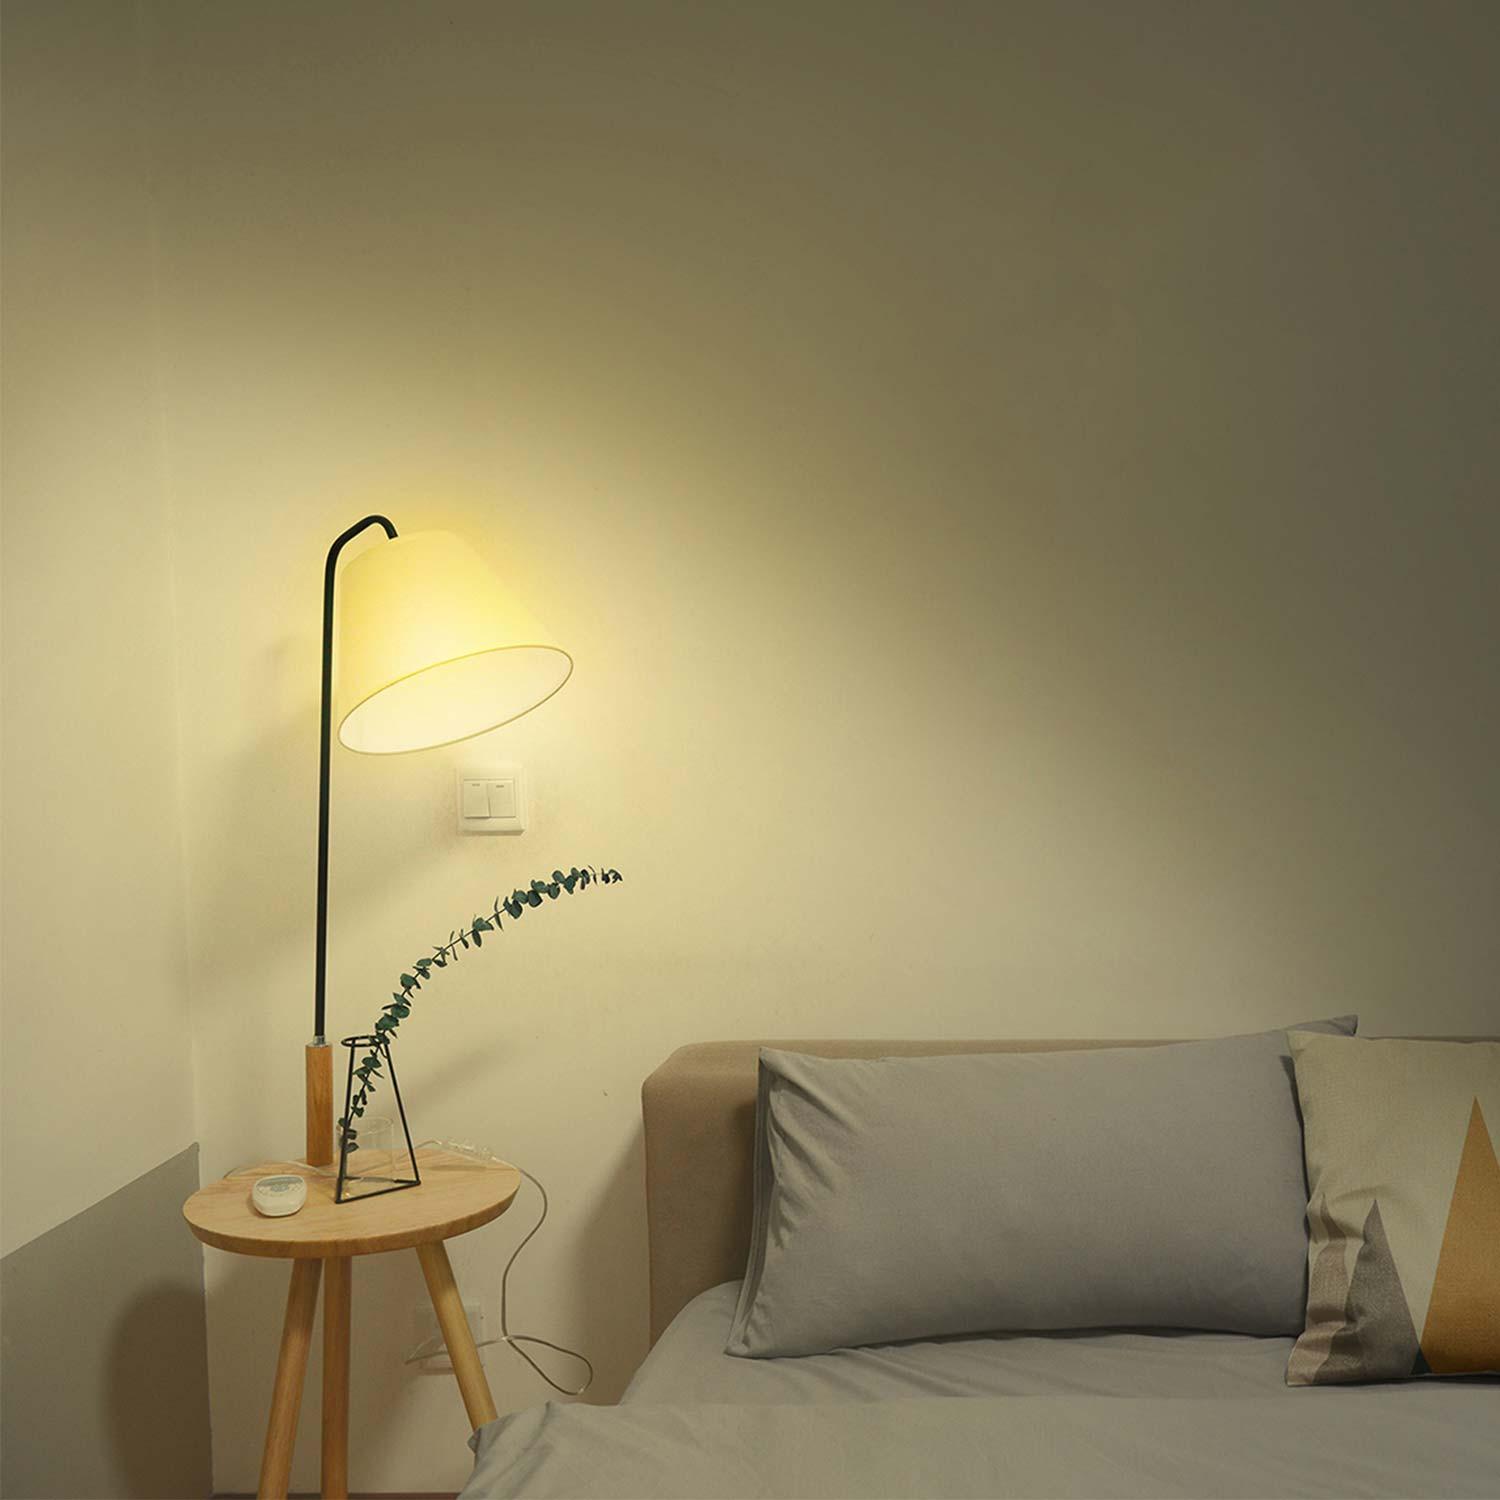 Hombli Smart Spot GU10 White-Lampe 2er-Set + gratis Smart Spot GU10 White 2er-Set - Weißlicht im Wohnzimmer